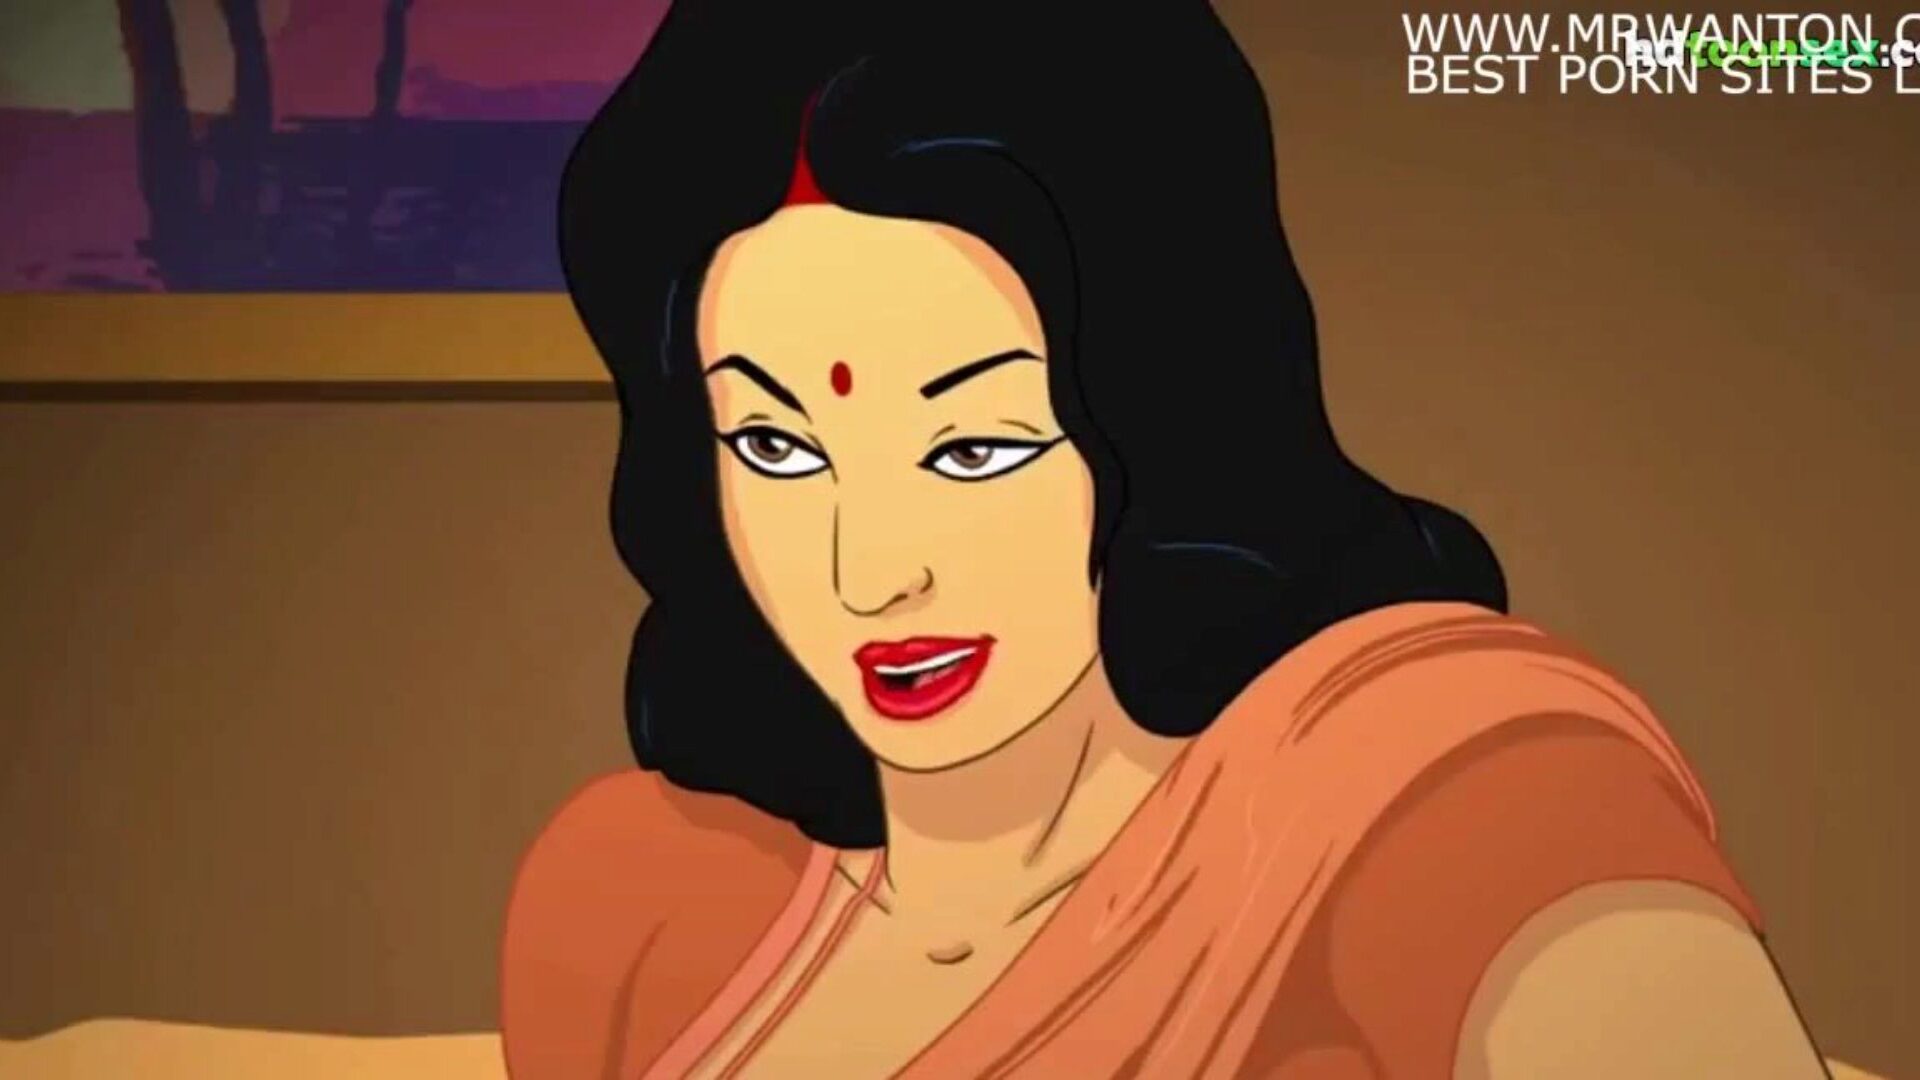 Cartoon Bf Download Hd Hindi - Cartoon Sex - XXX BULE